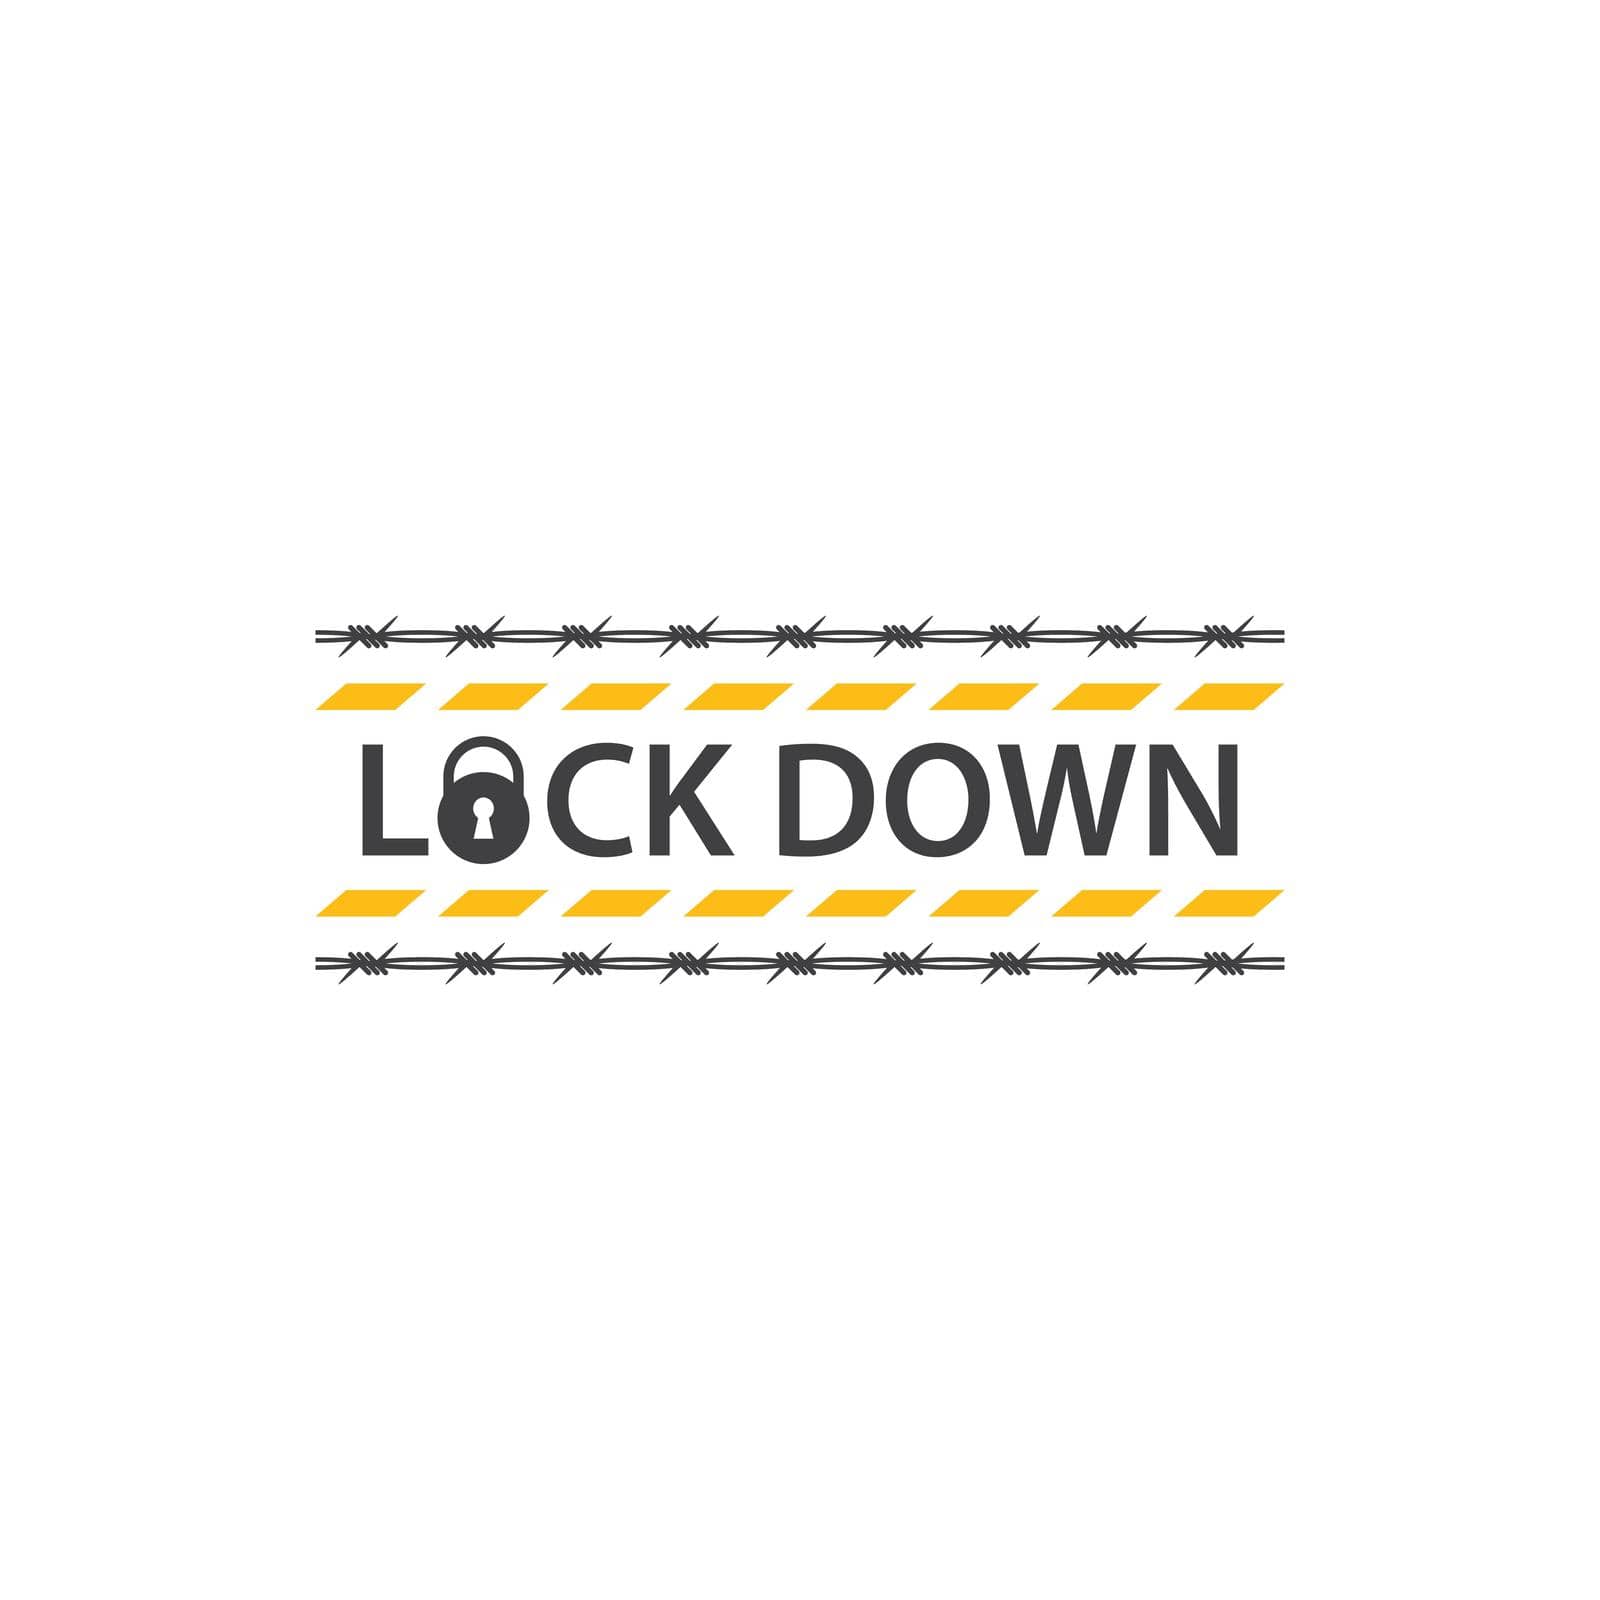 Lockdown dangerous covid-19 infection international virus